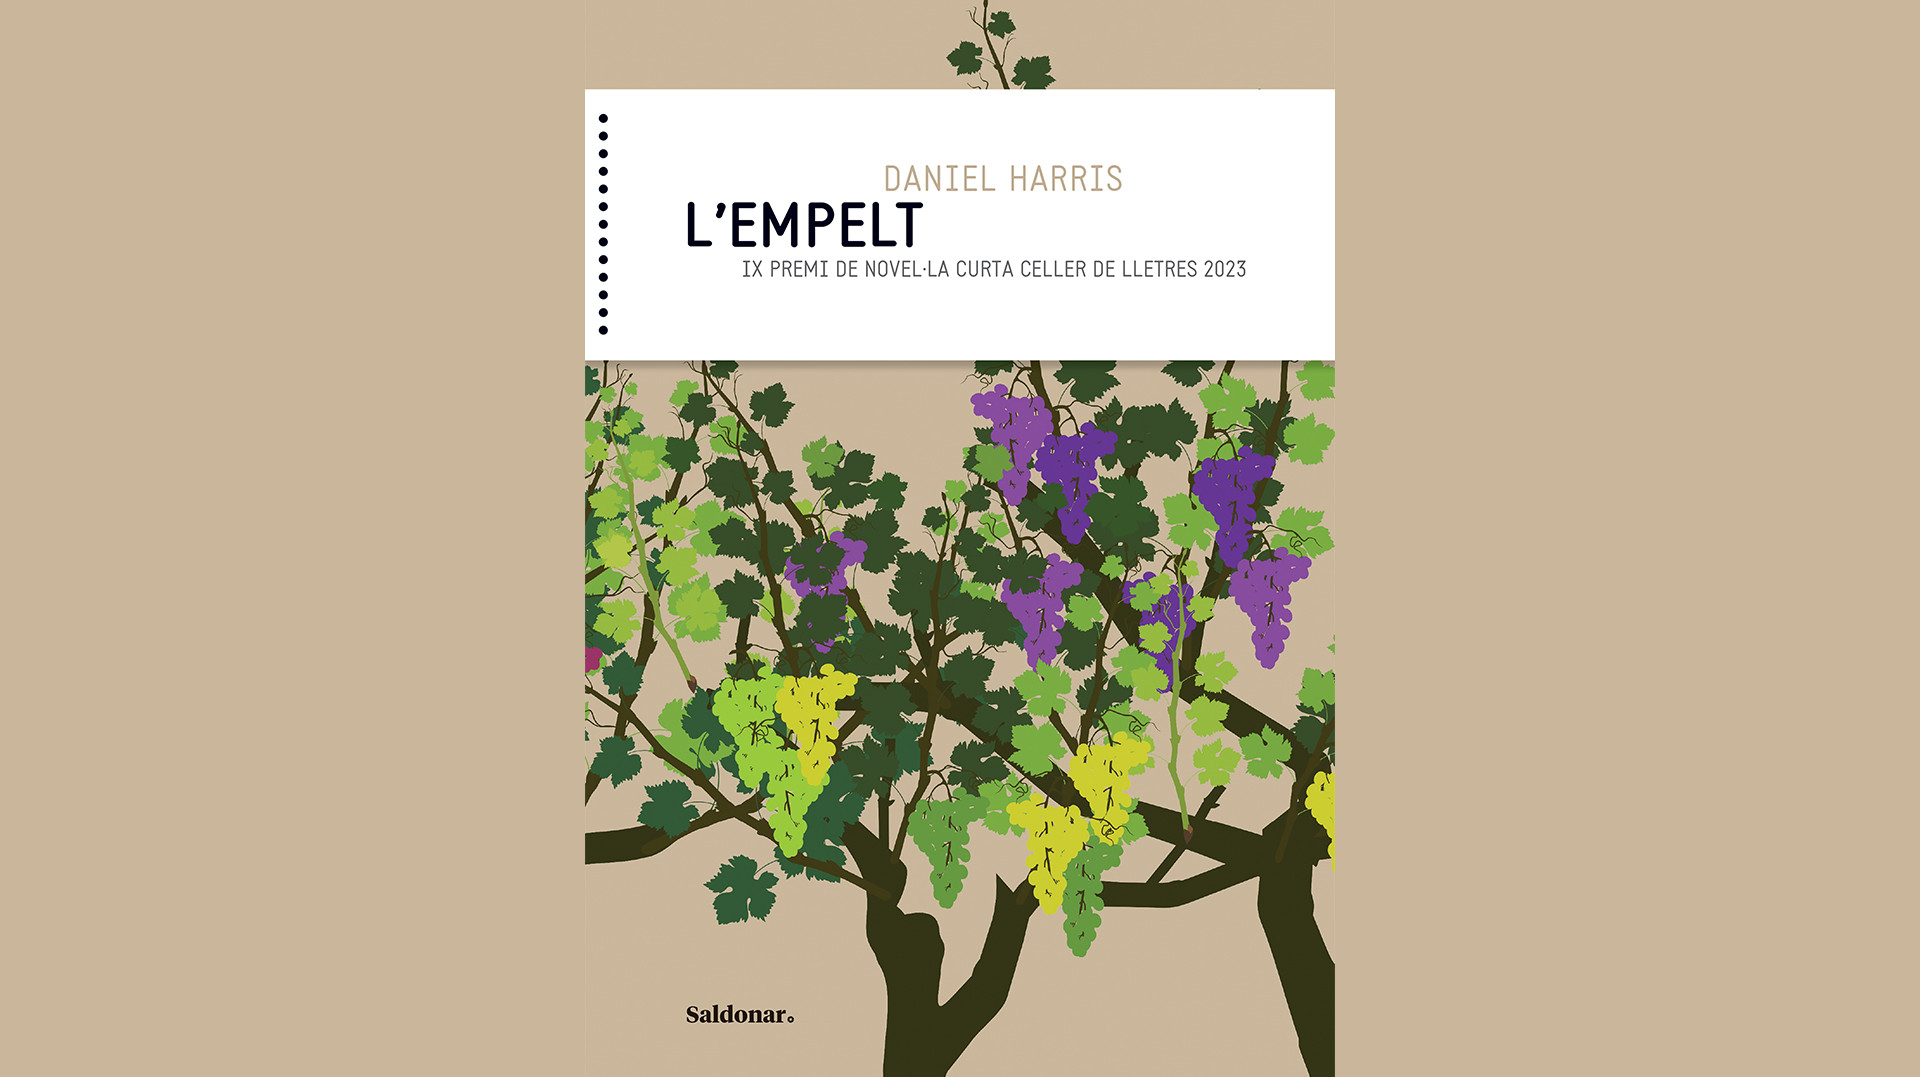 Presentació del llibre “L’empelt” de Daniel Harris